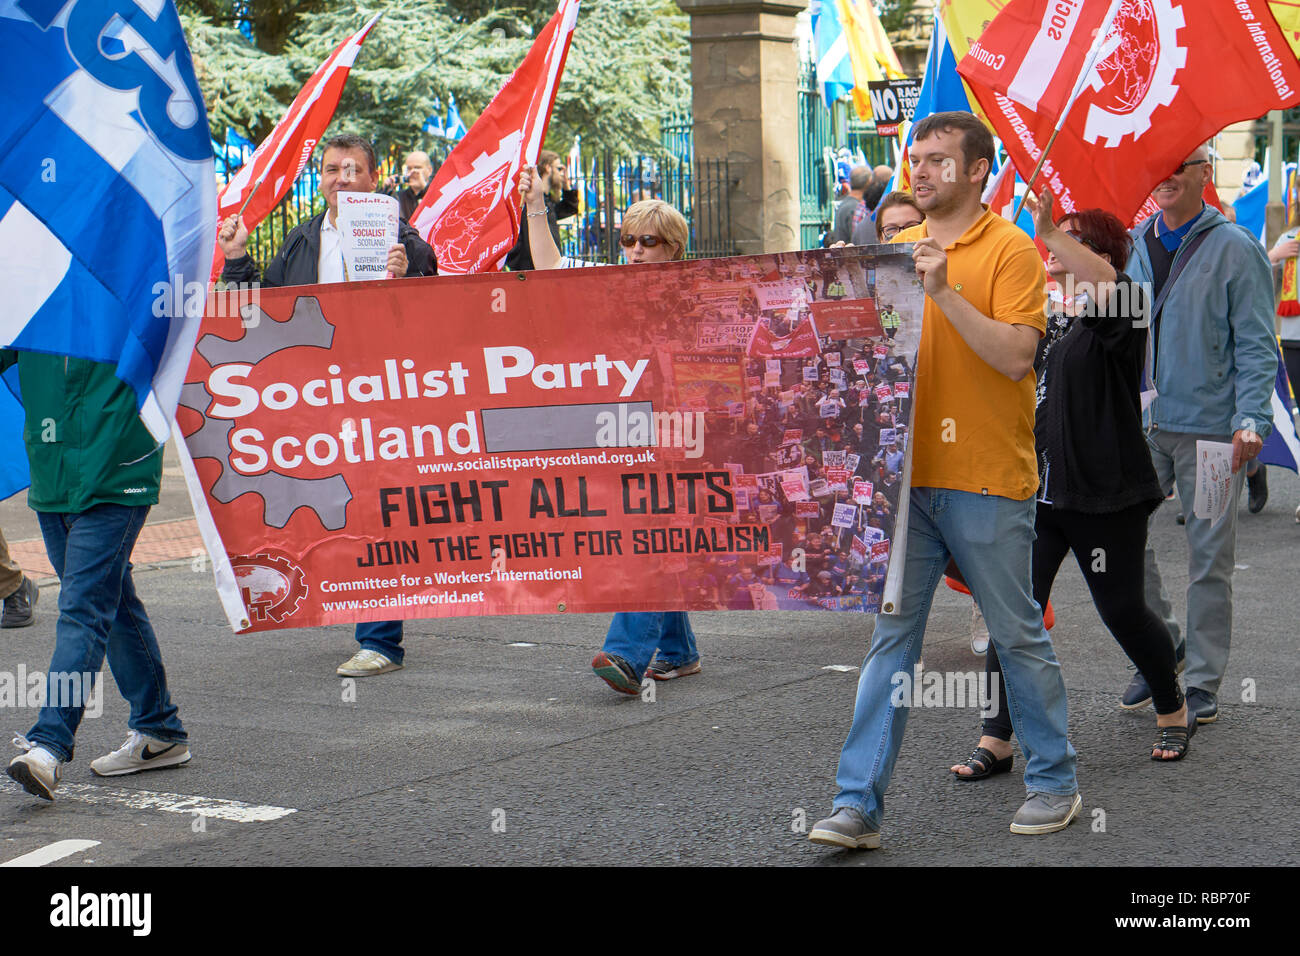 Mars pour l'indépendance écossaise, Dundee, Ecosse. 18 août, 2018. Parti socialiste Ecosse bannière. Banque D'Images